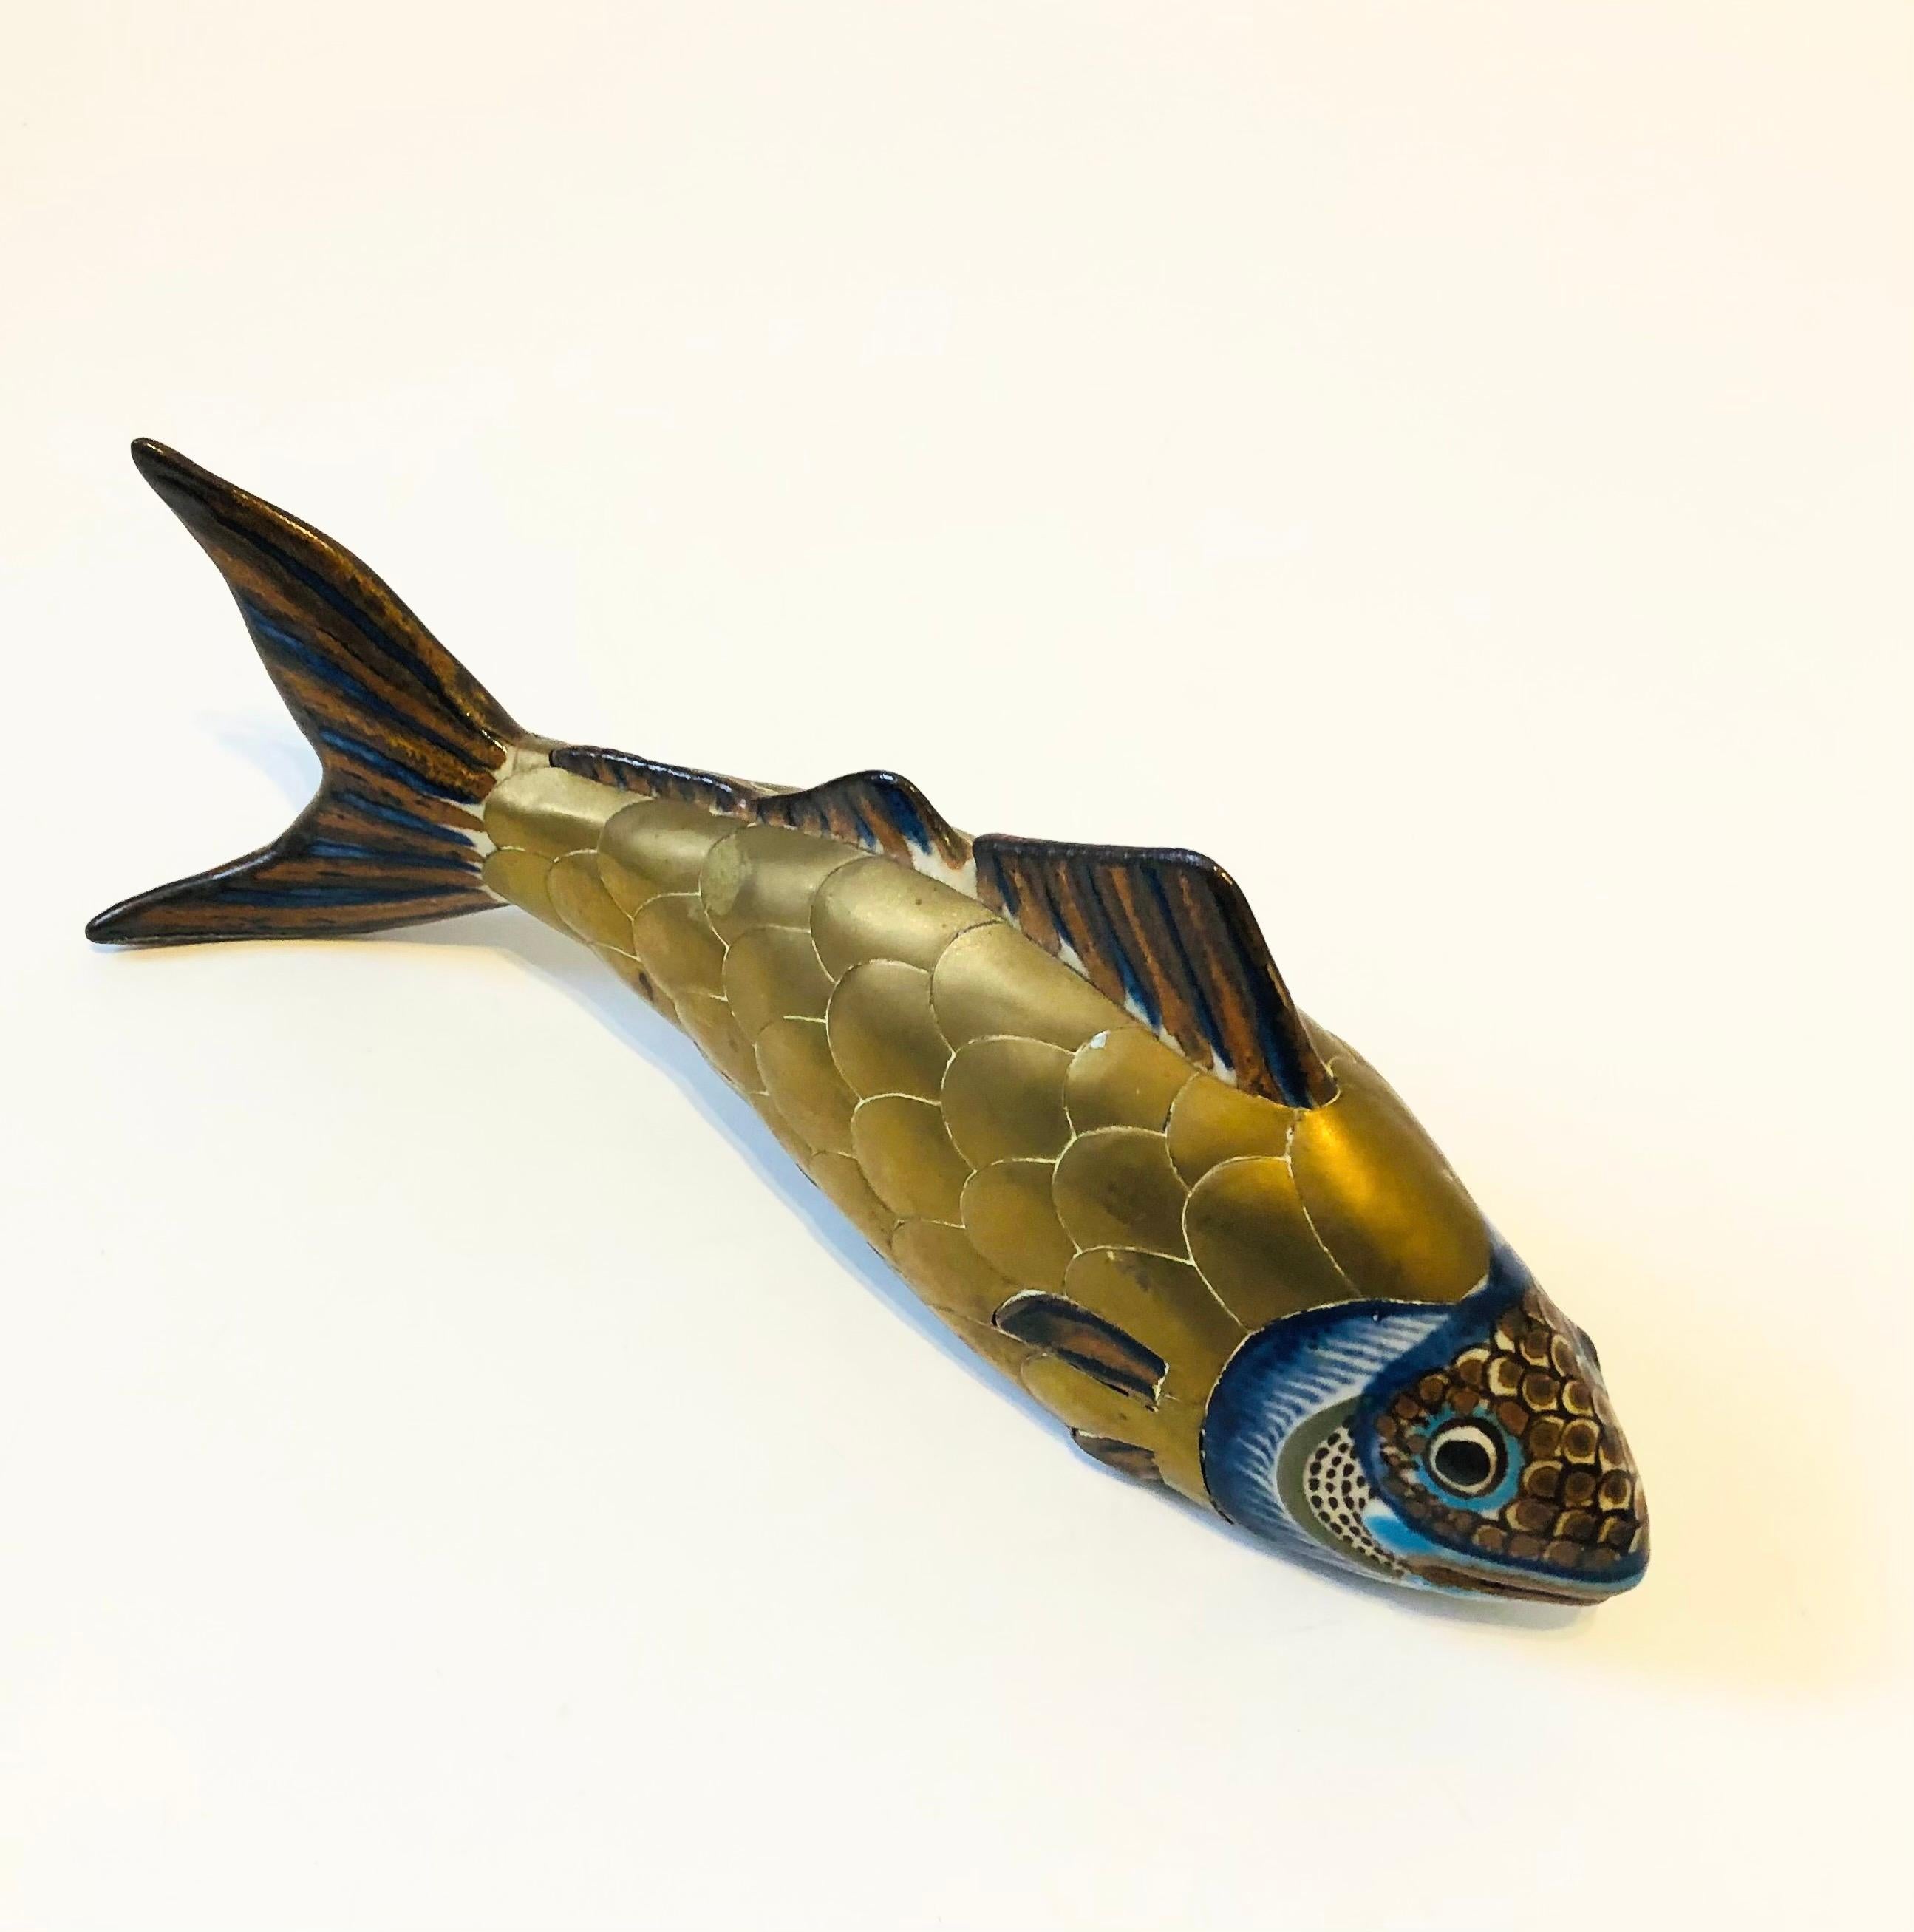 Un magnifique poisson vintage en poterie tonala enveloppé de laiton. Fabriqué au Mexique, avec de magnifiques motifs peints à la main sur la poterie et des écailles de poisson formées dans le laiton.

